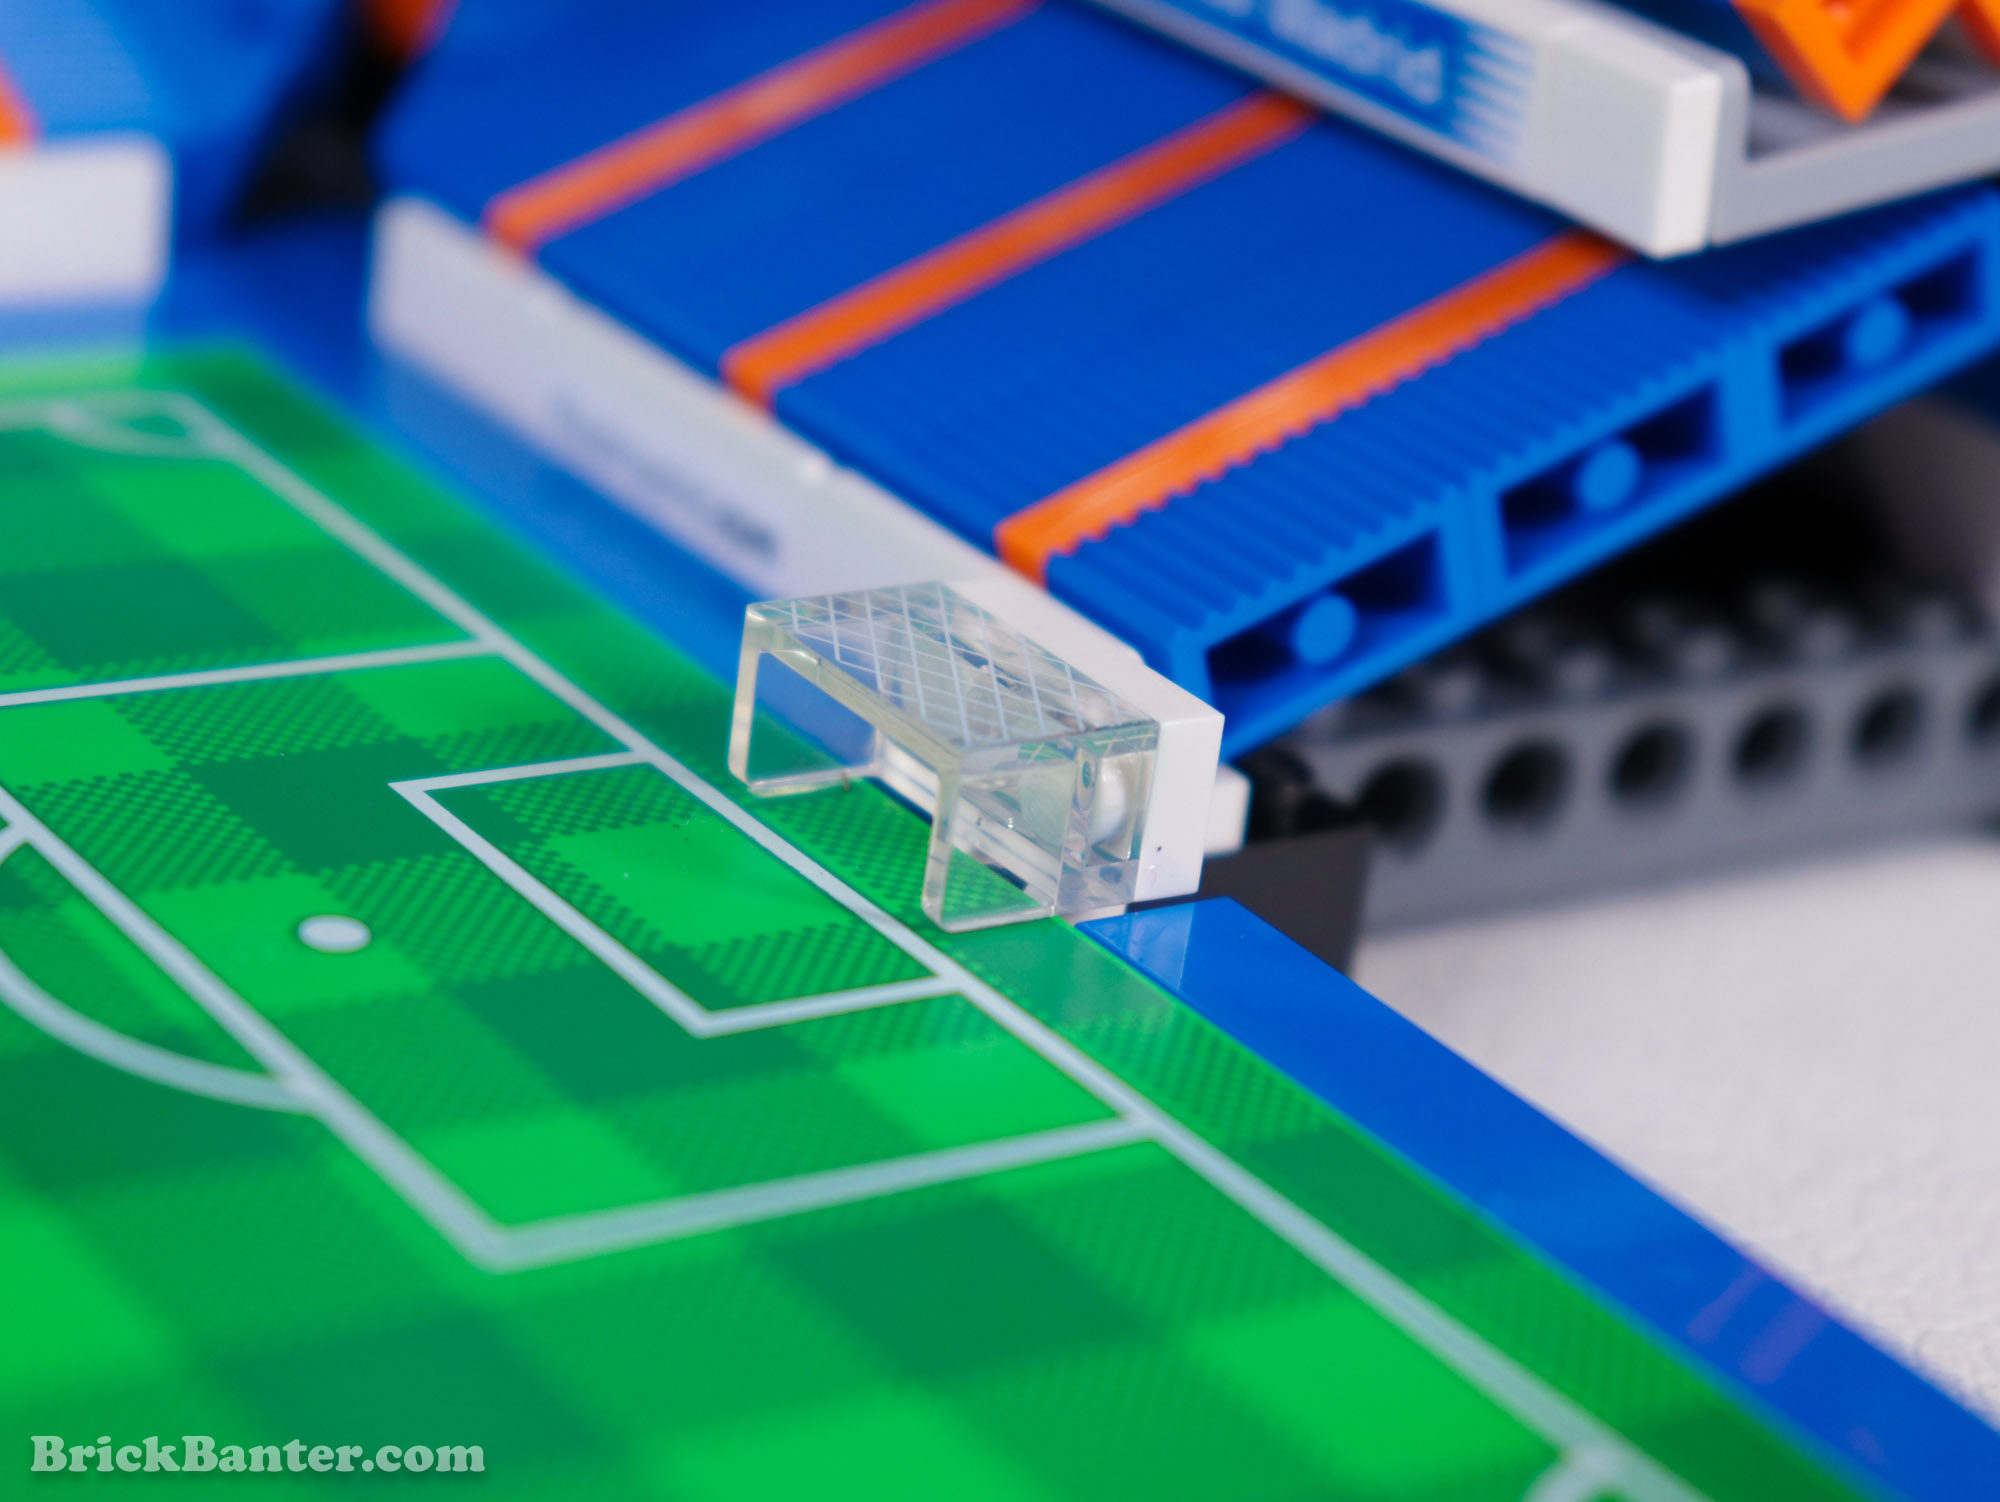 LEGO 10299 - Real Madrid Santiago Bernabéu Stadium  - Review by BrickBanter.com